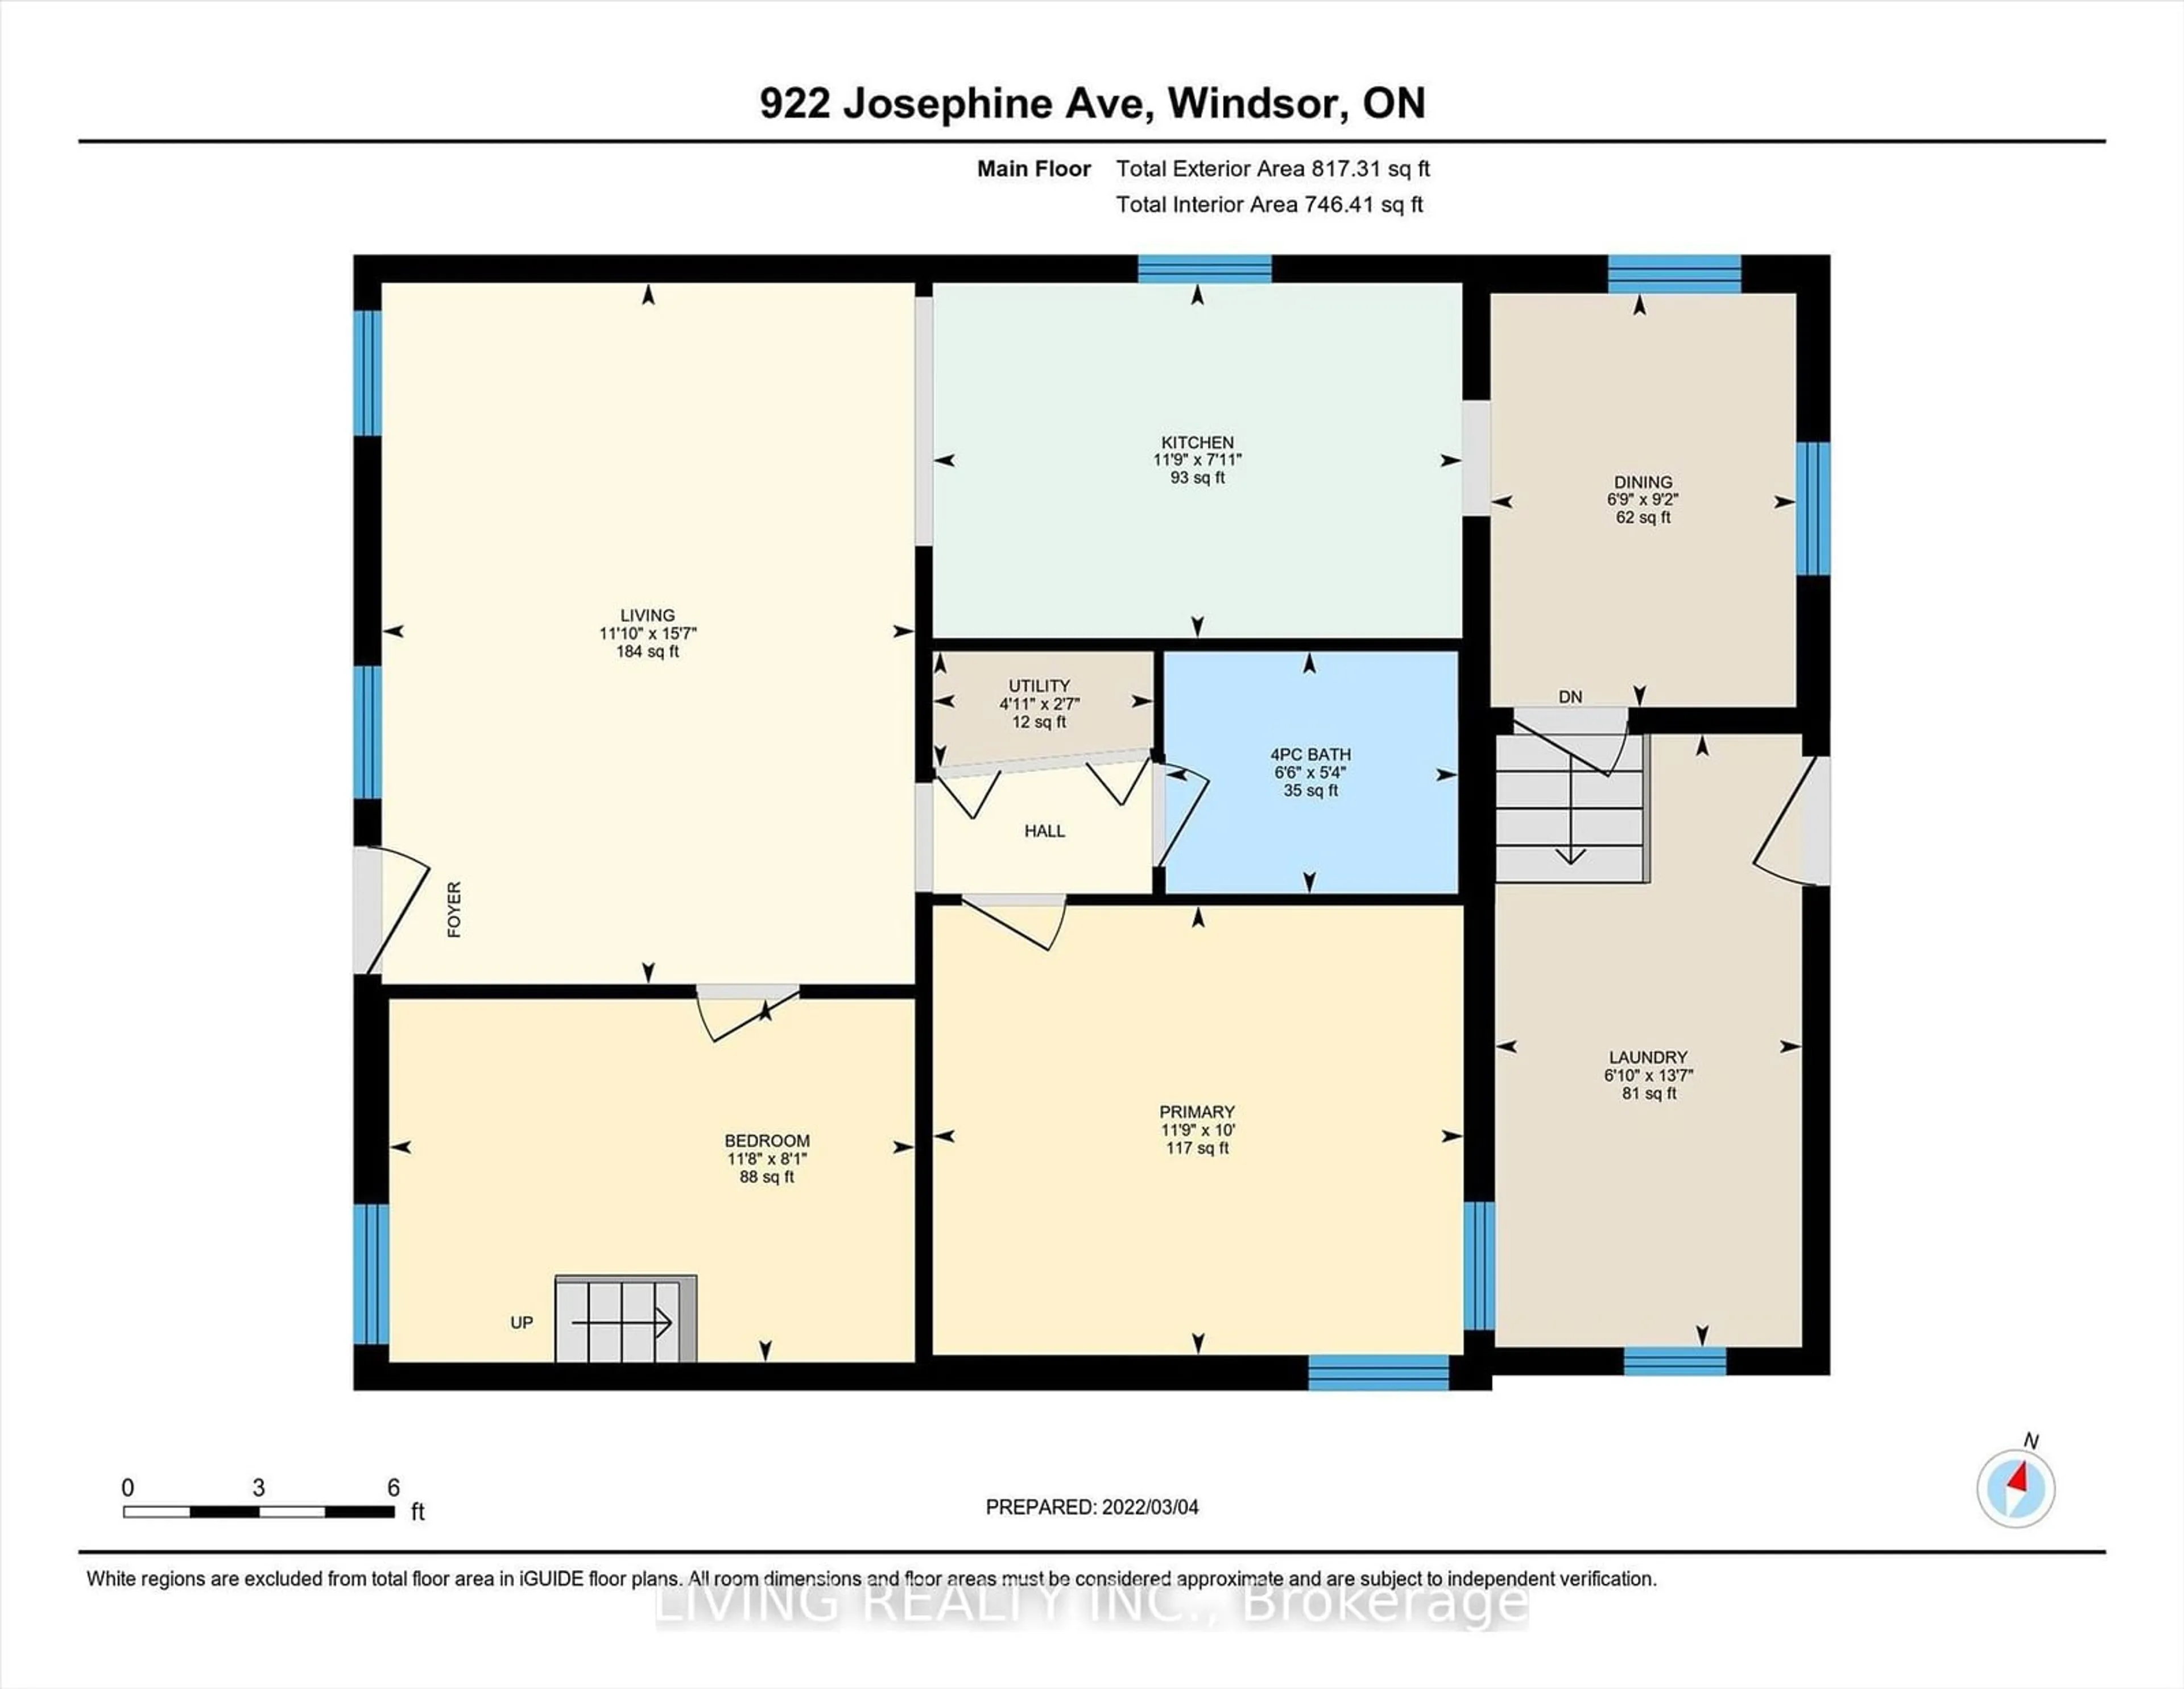 Floor plan for 922 Josephine Ave, Windsor Ontario N9B 2L5